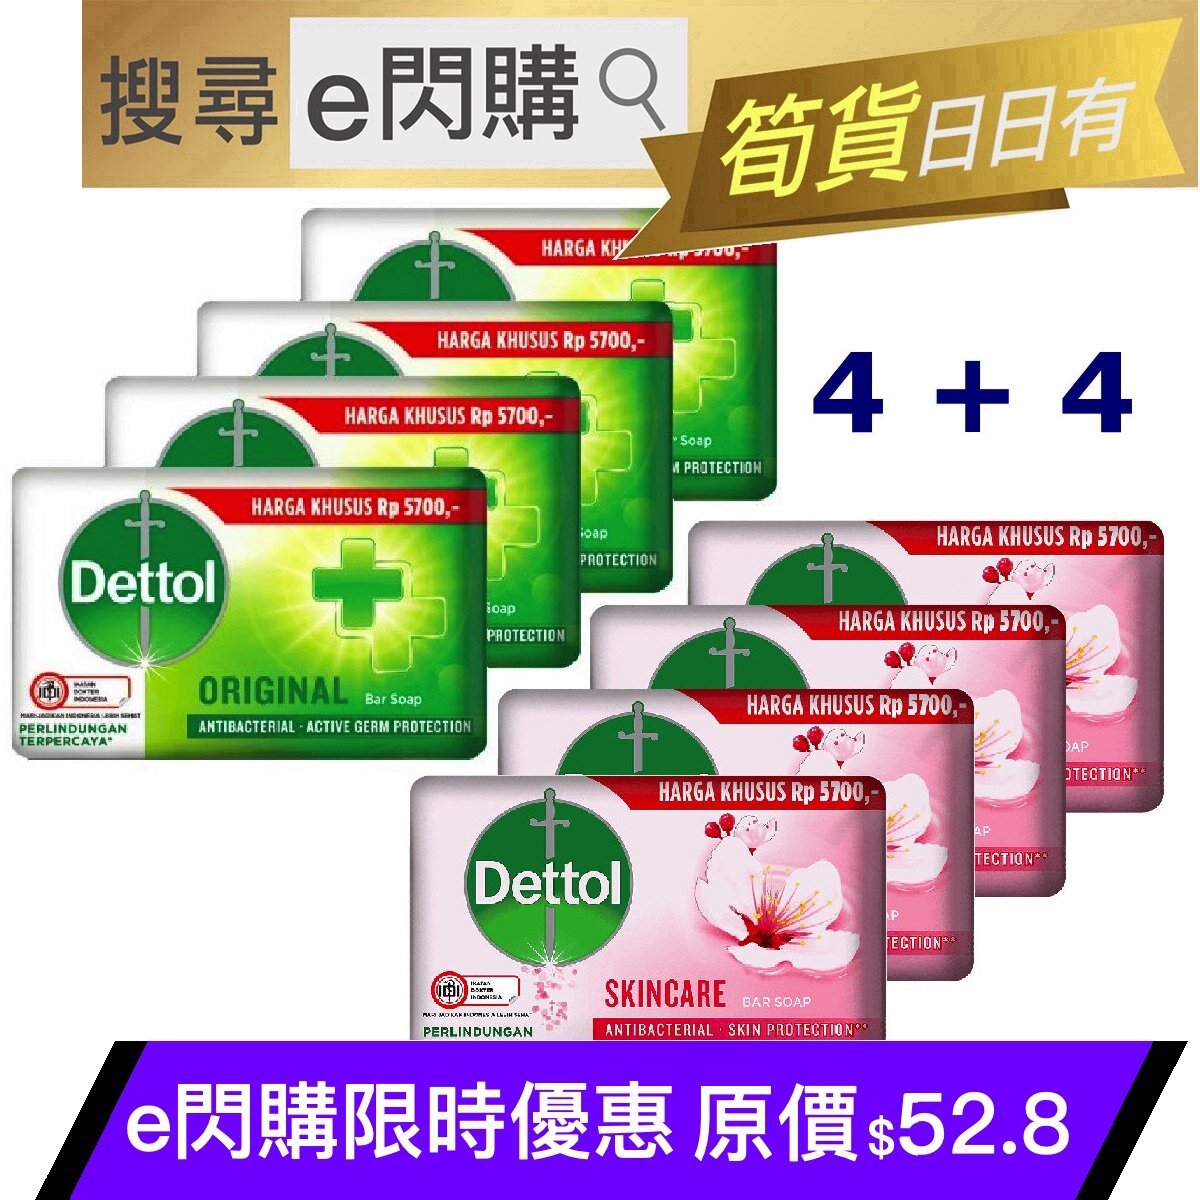 Ⓓ · 抗菌 (4+4) Antibacterial Skincare Bar Soap (100g粉+100g綠 4❎2) + Original Bar Soap ~~